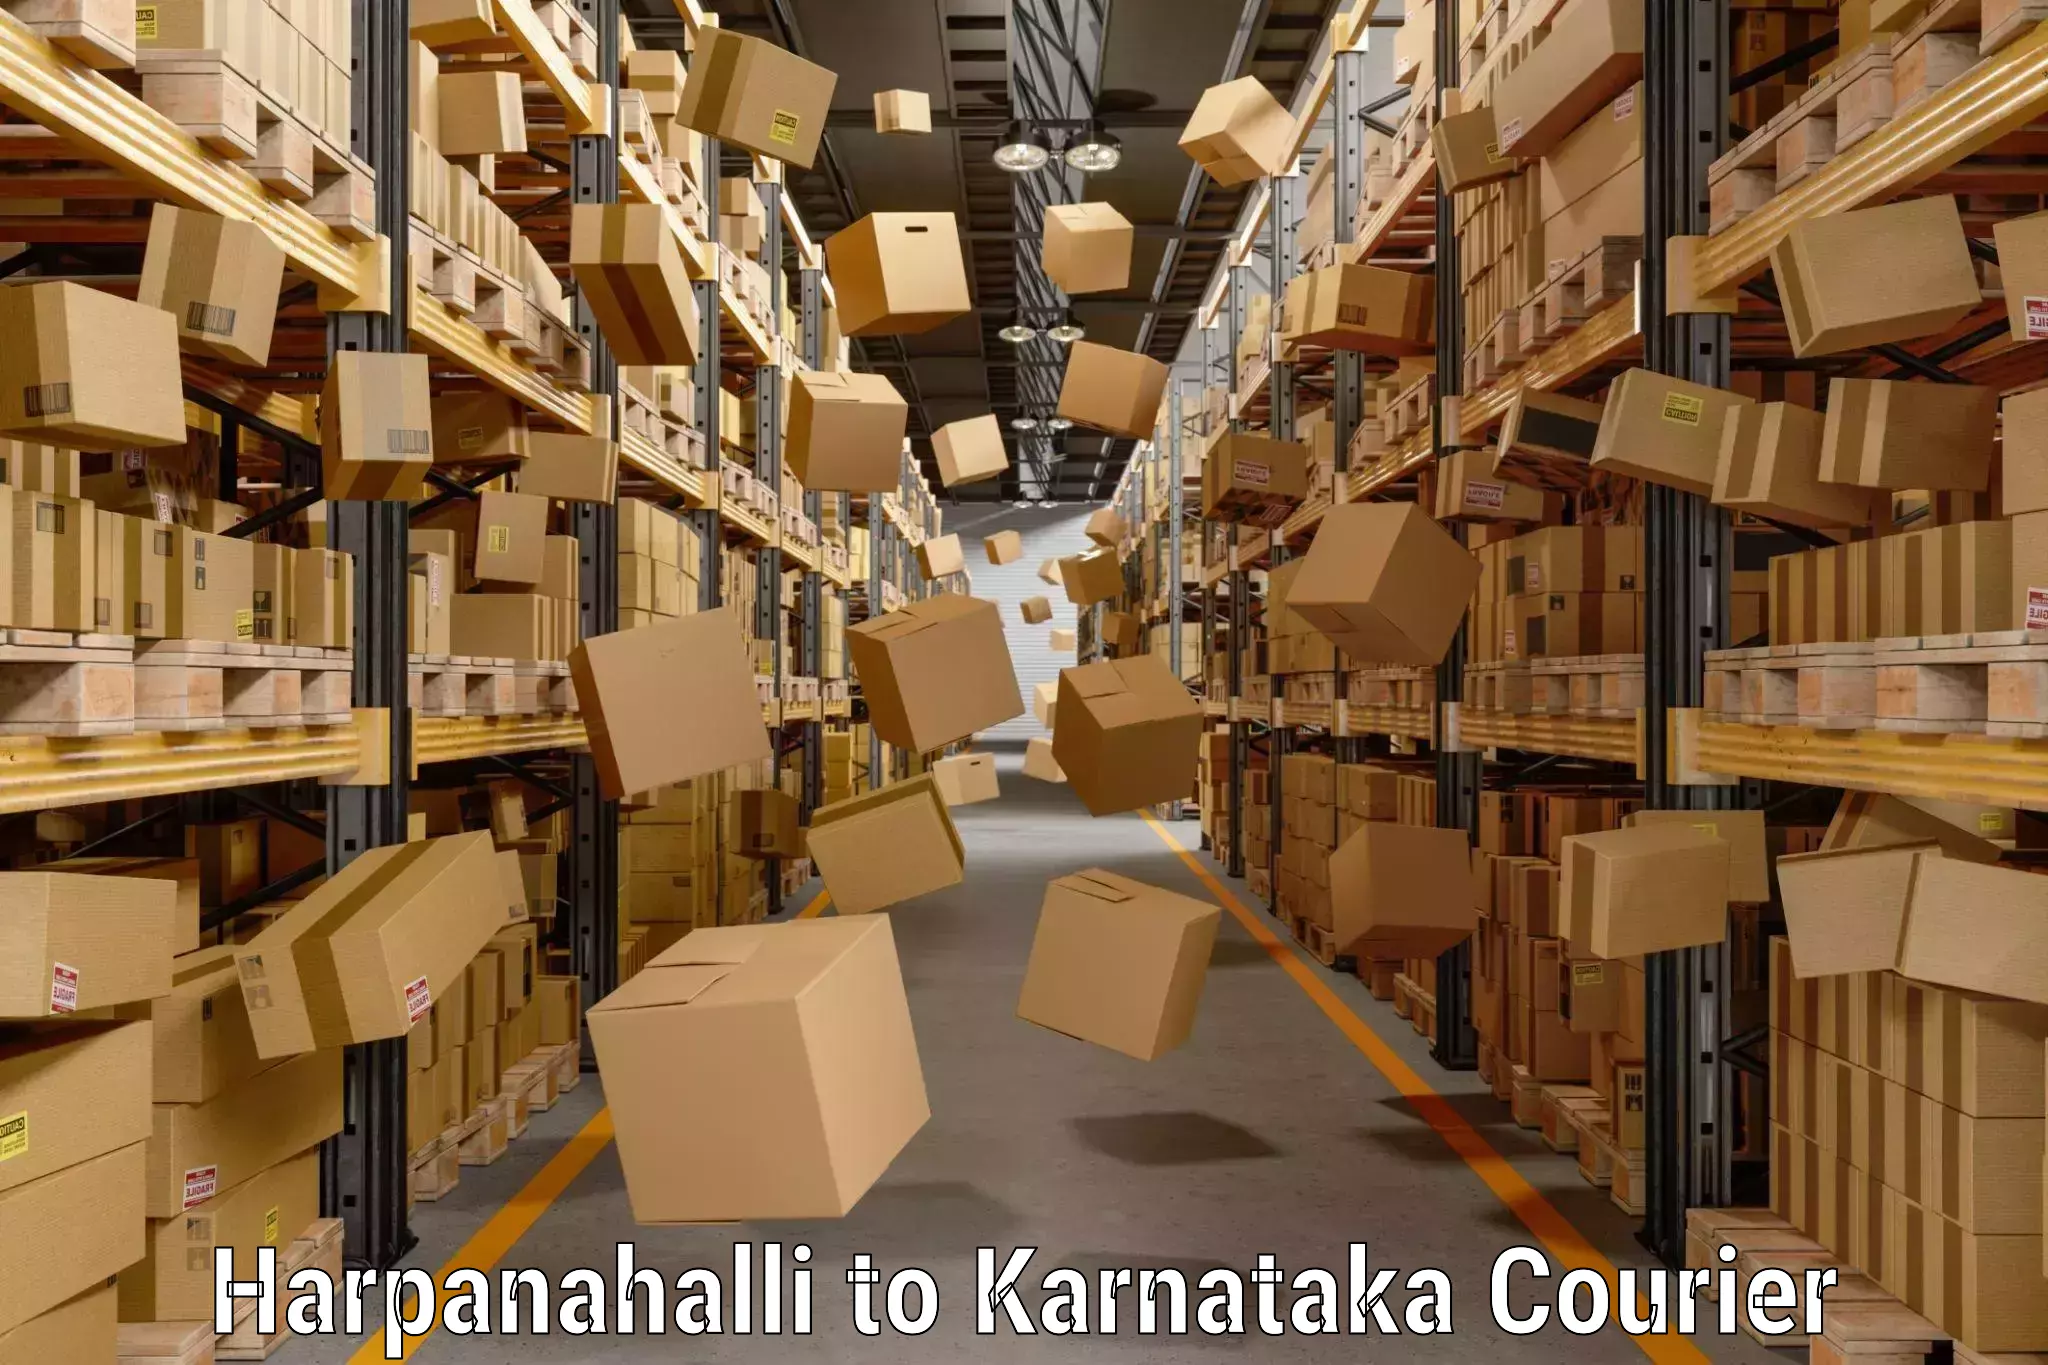 Luggage delivery network Harpanahalli to Karnataka